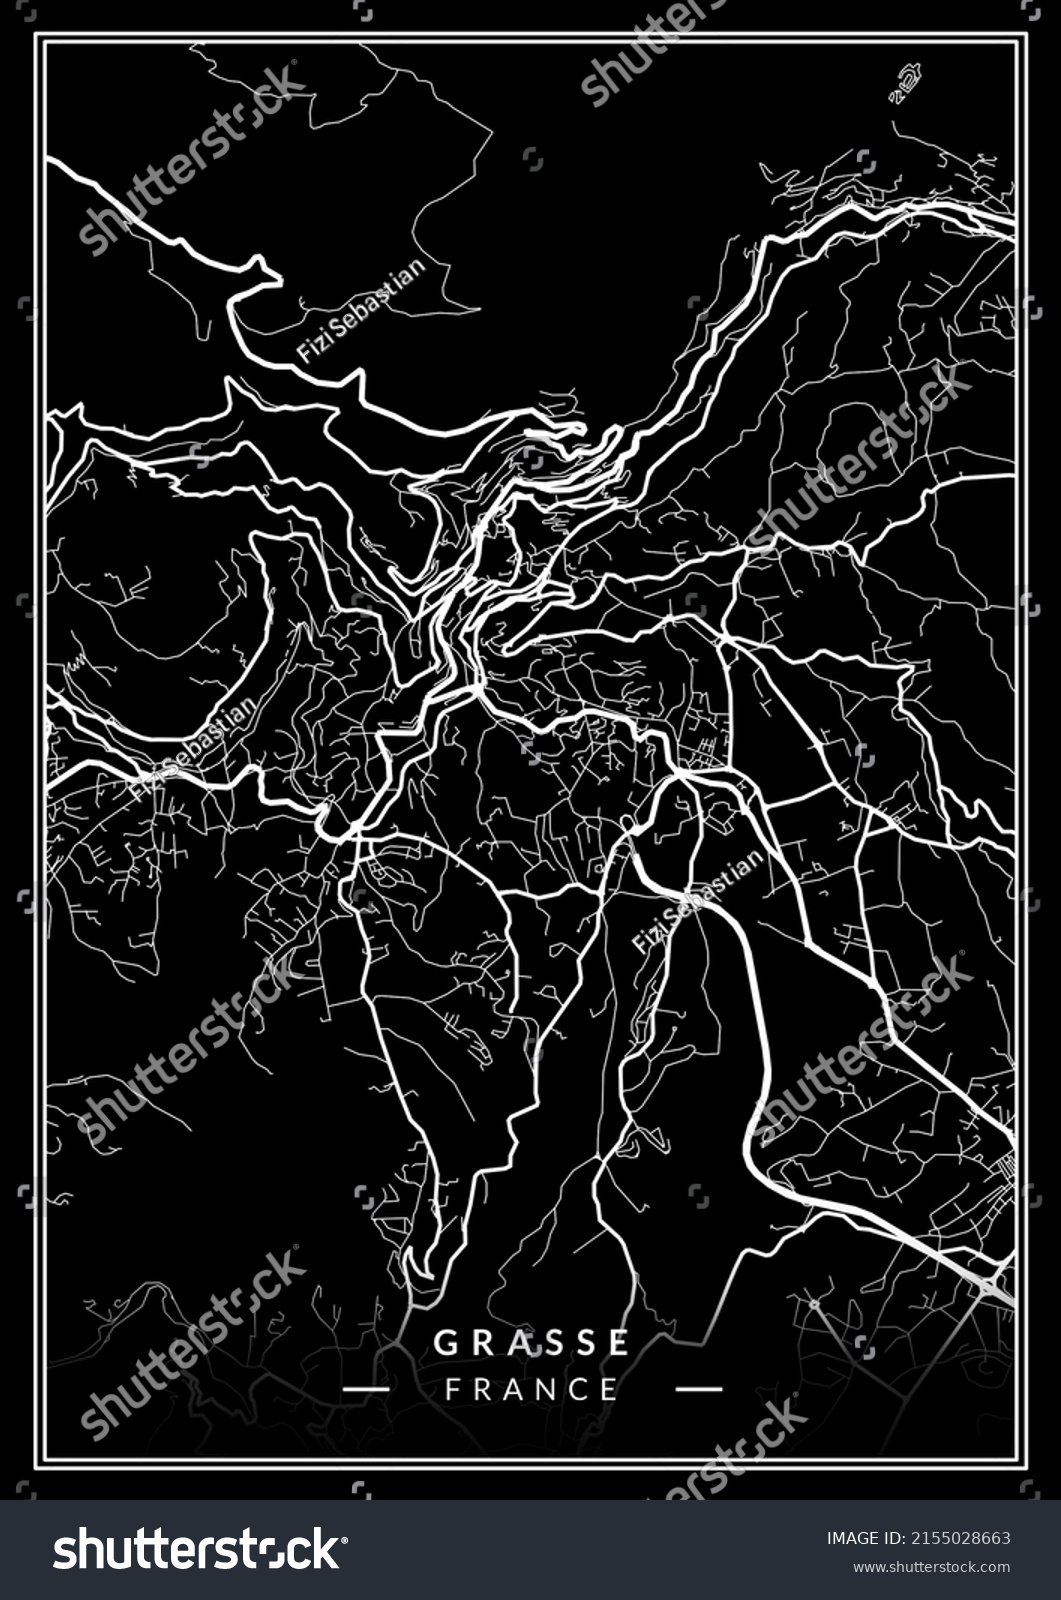 Grasse France City Map Black White Stock Illustration 2155028663 ...